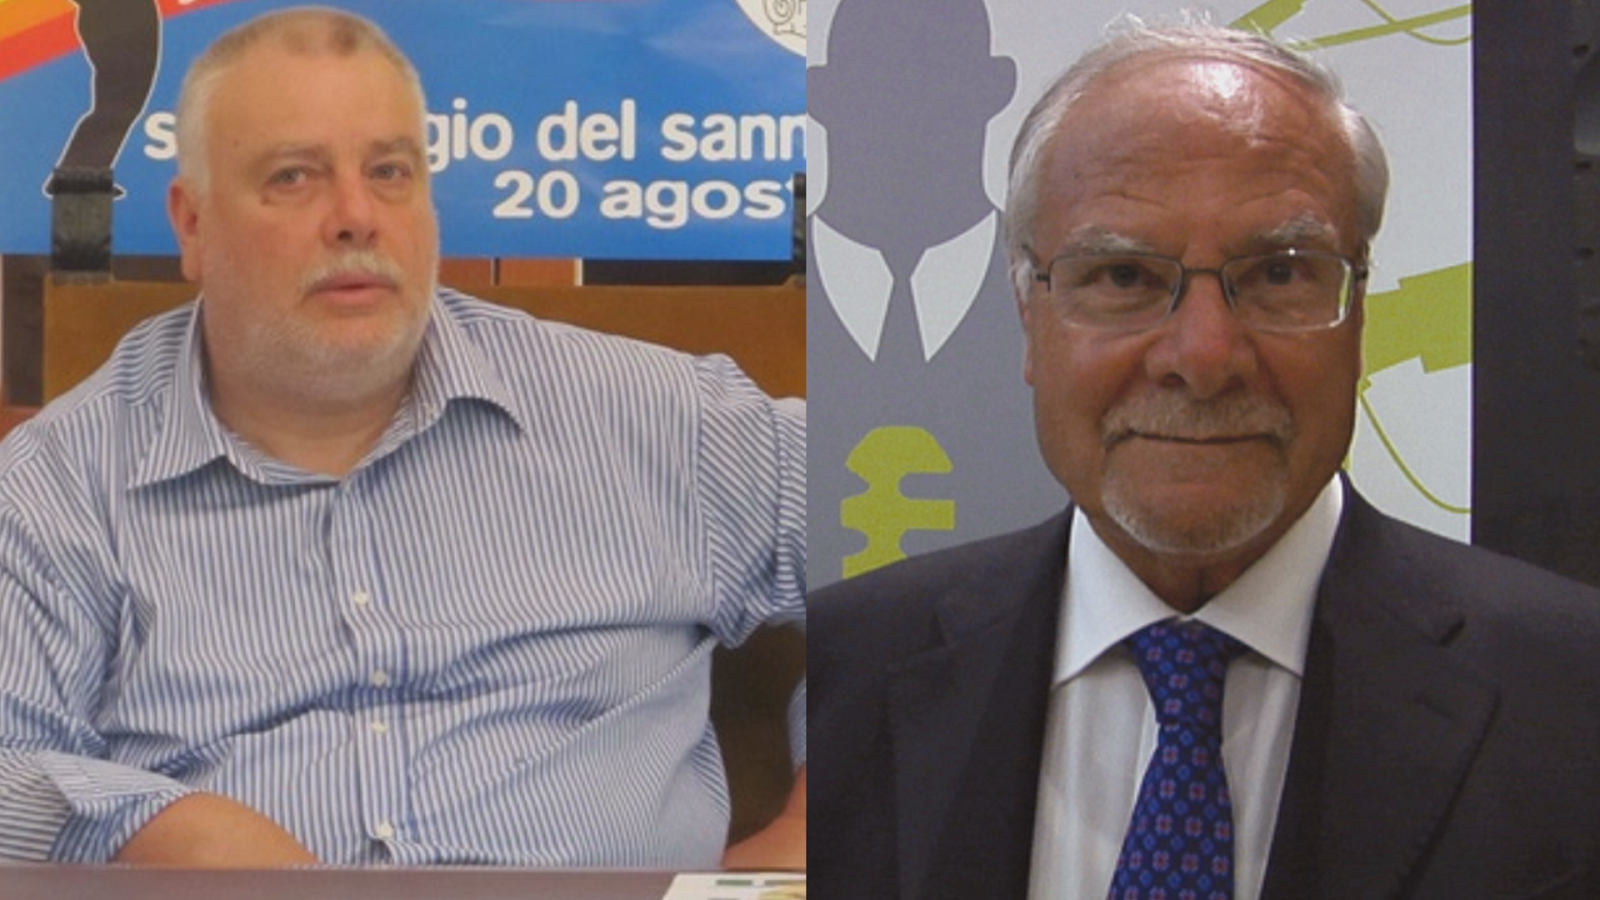 San Giorgio del Sannio| Sequestro Villa Comunale,Ricci risponde alle accuse di Mario Pepe